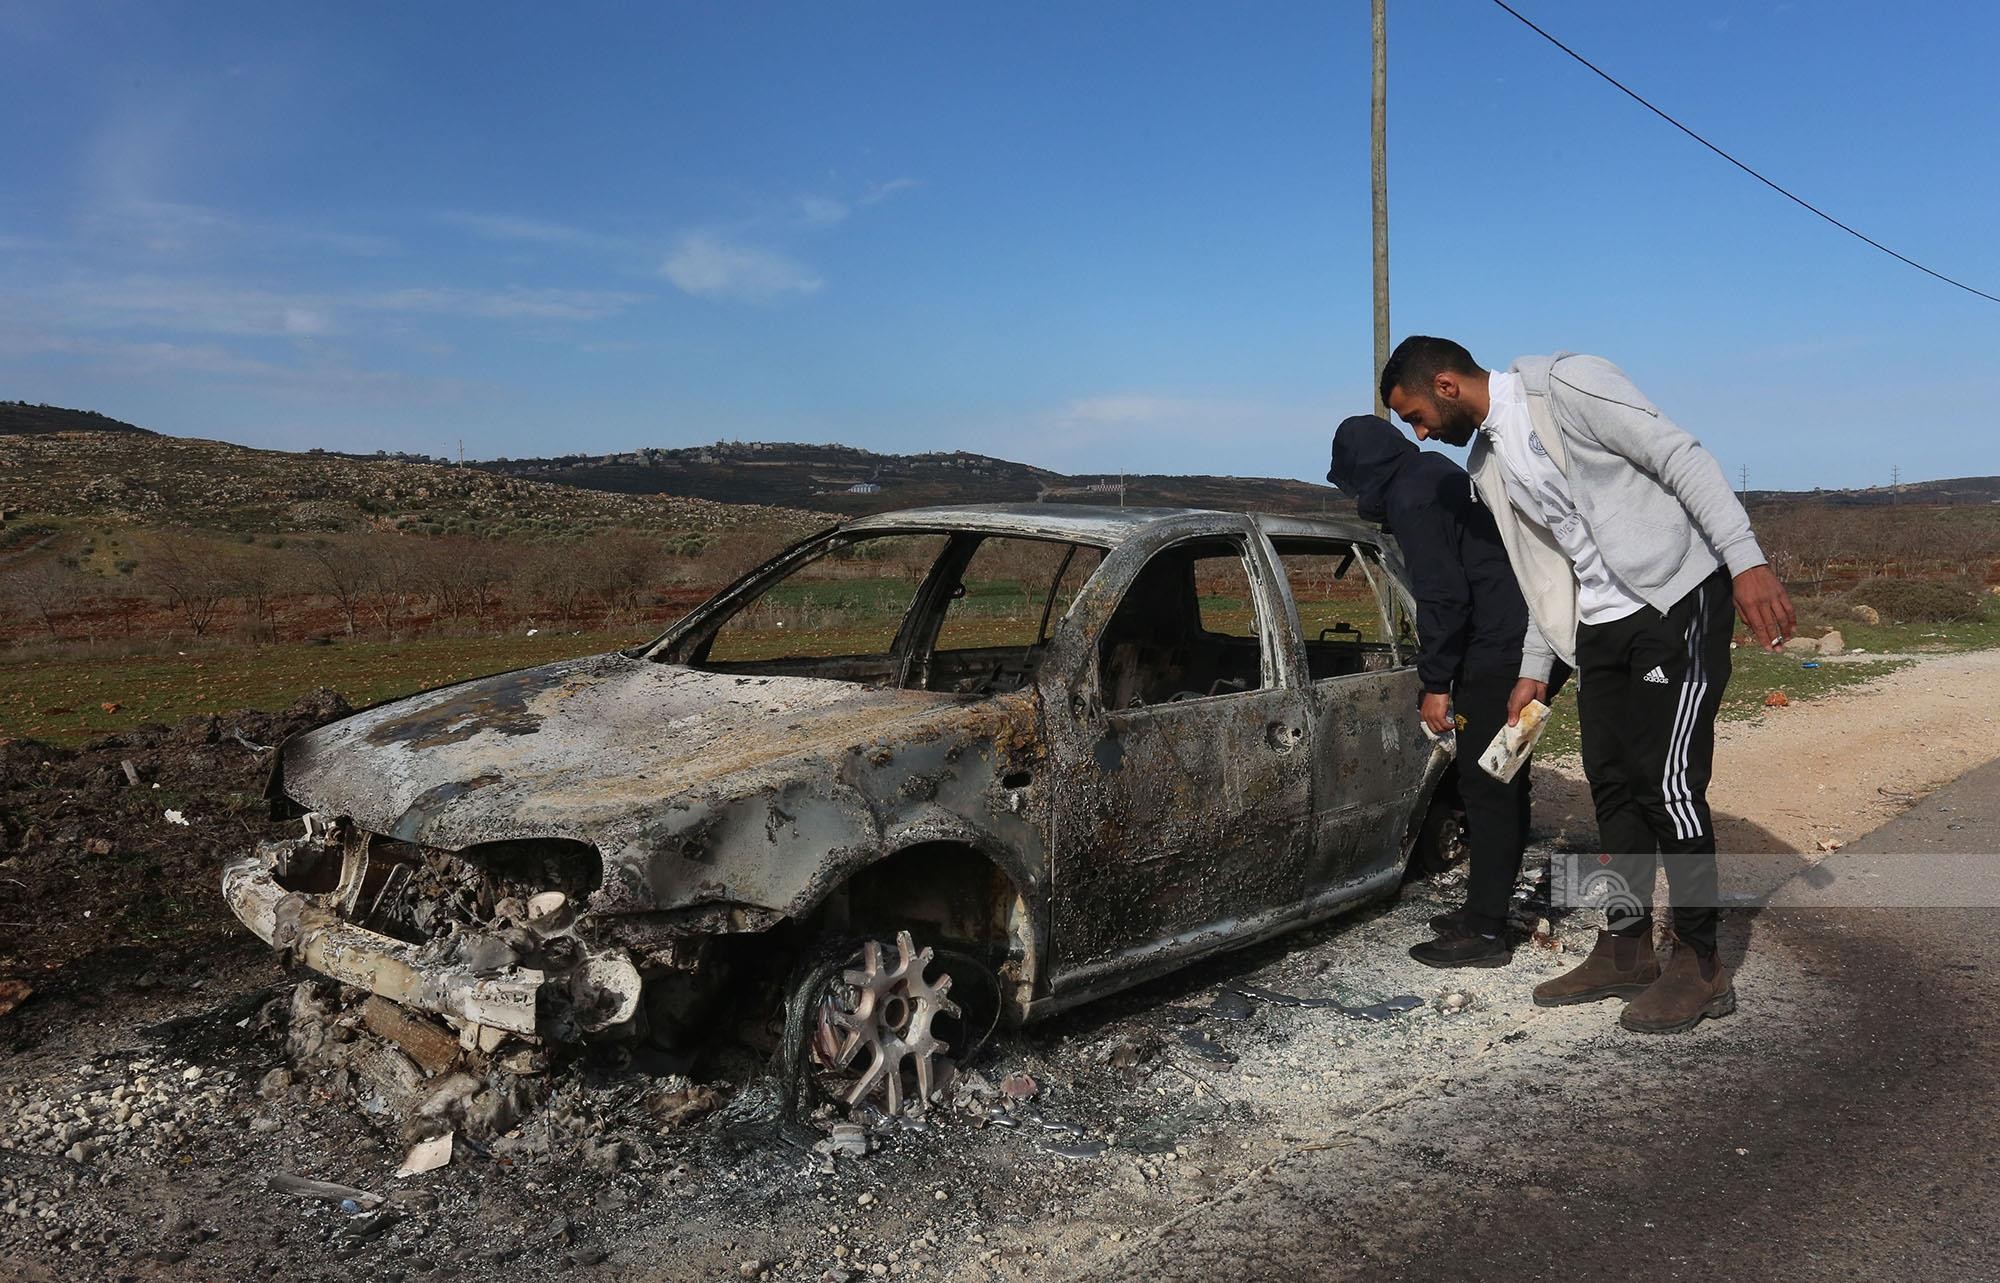 مستوطنون يحرقون ست مركبات فلسطينية بشكل كامل بين بلدتي عقربا ومجدل بني فاضل قرب نابلس 112.jpg